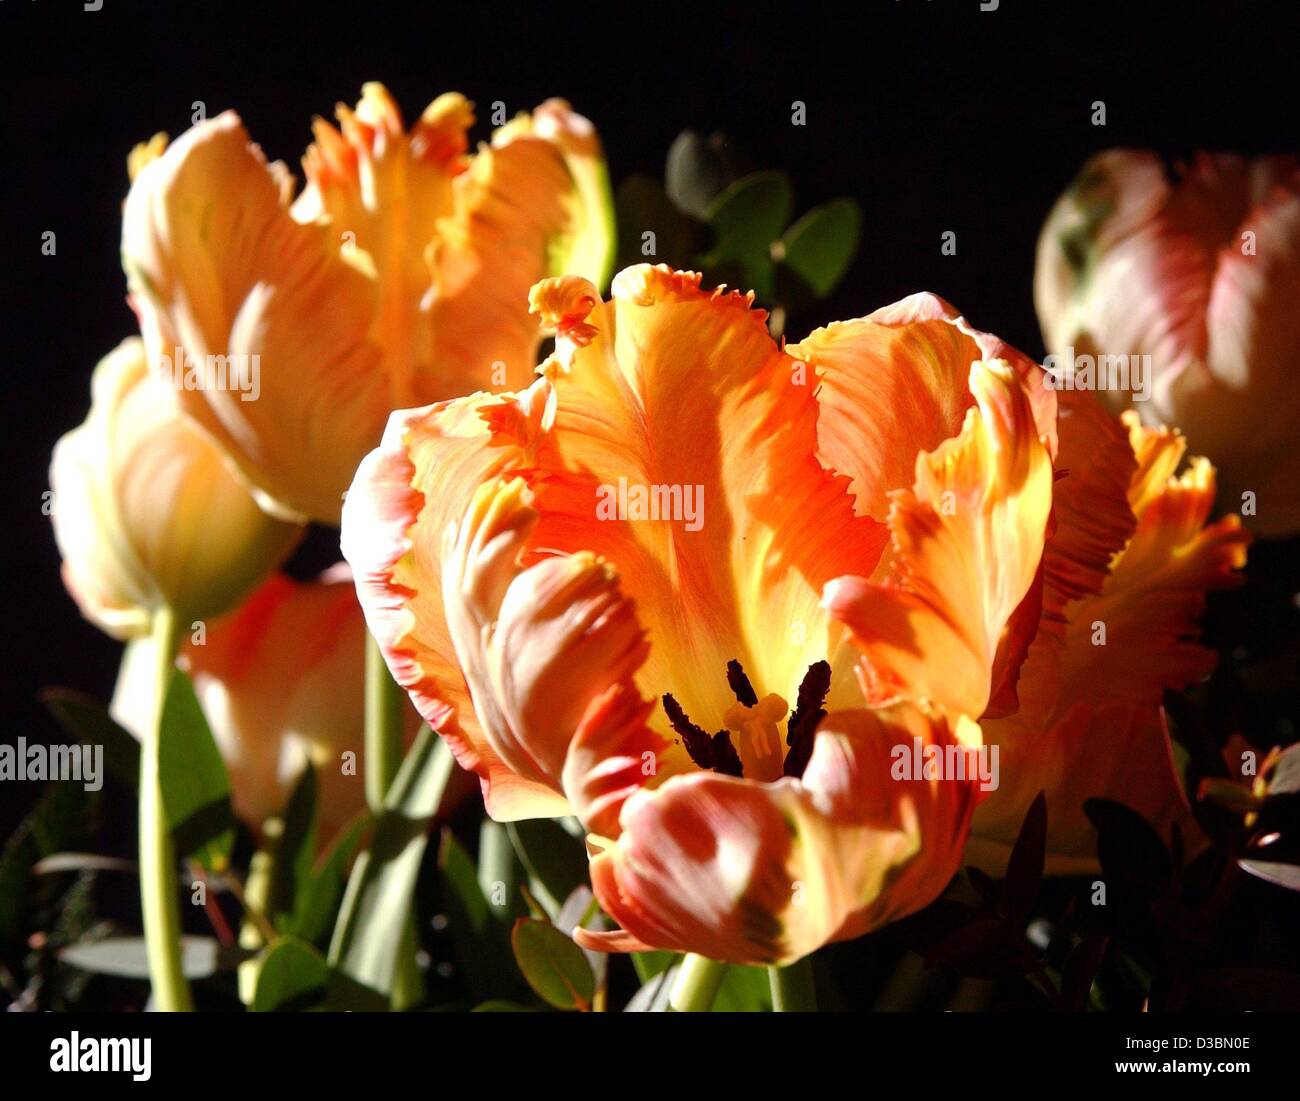 (Afp) - Les fleurs jaune-rouge d'un parrot tulip sont vus dans Berlin, 6 avril 2003. Le tulip est 'découvert' au 16ème siècle en Turquie, et bientôt l'Europe conquise via Vienne, avec la Hollande en train de devenir le pays 'tulip'. Autour de 1630 les prix ont fortement augmenté, avec une ampoule de l'Augustu Semper Banque D'Images